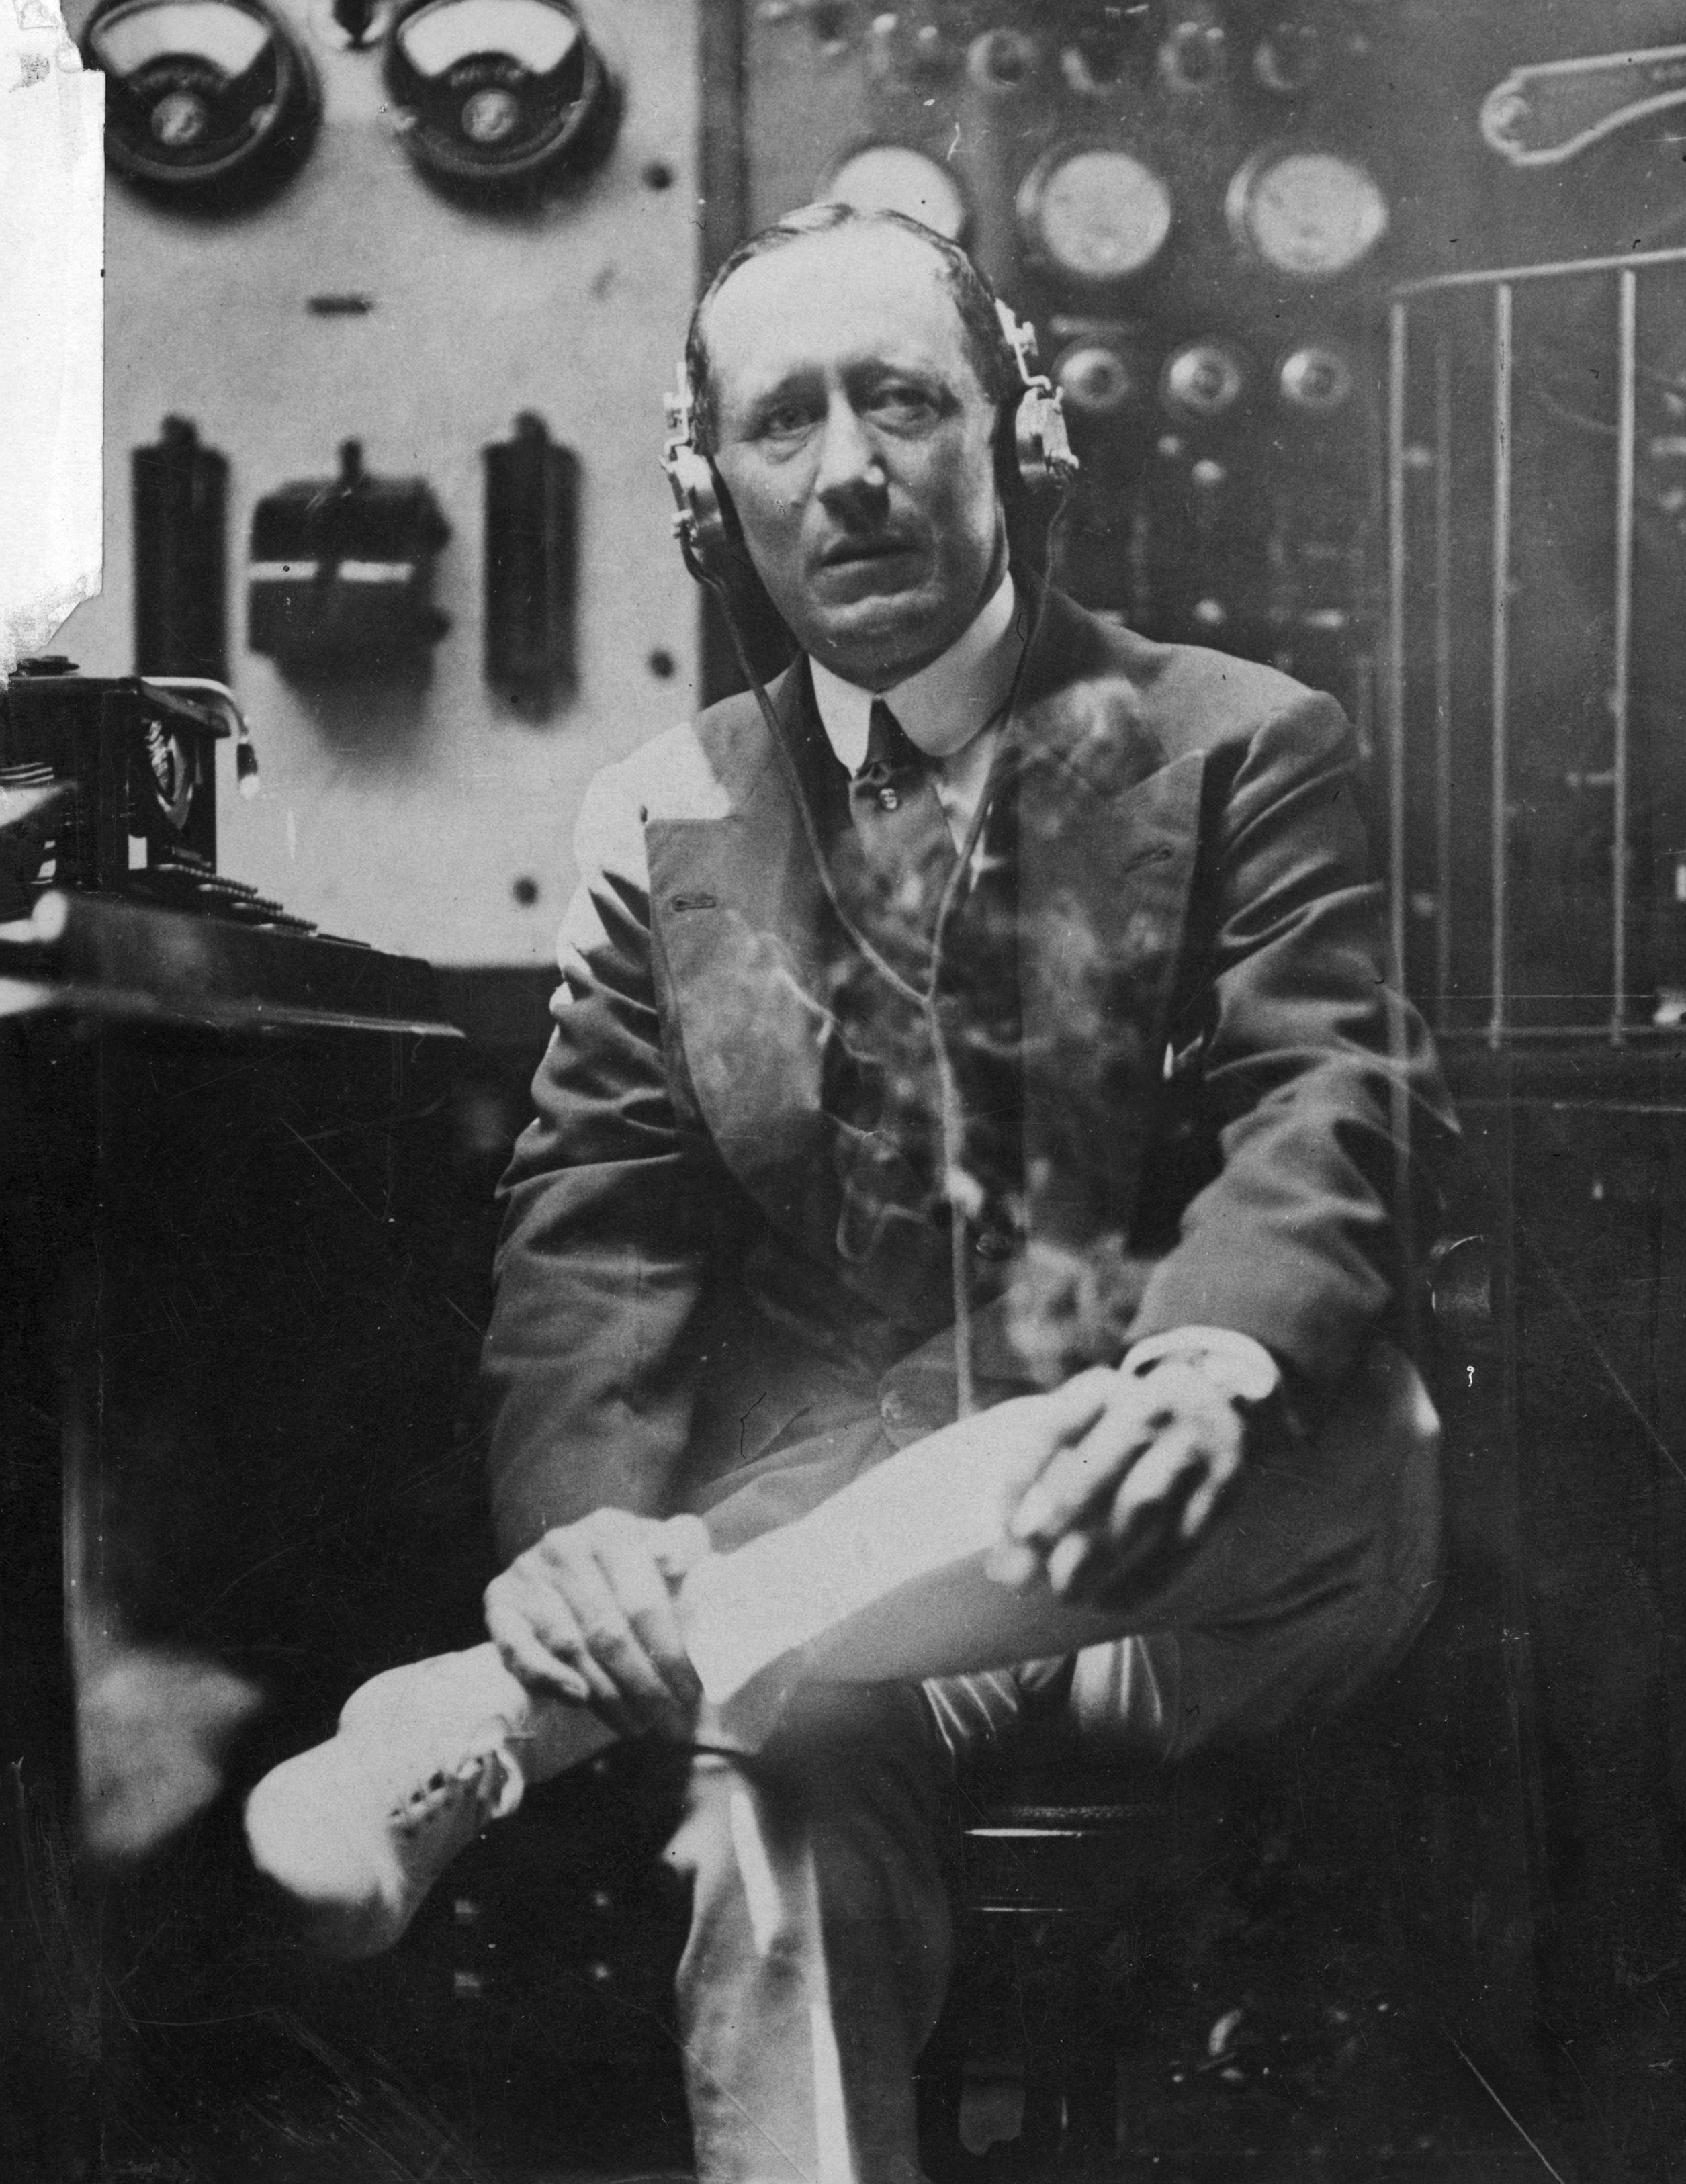 Marconi a bordo della sua nave"Elettra", che è praticamente un laboratorio wireless galleggiante